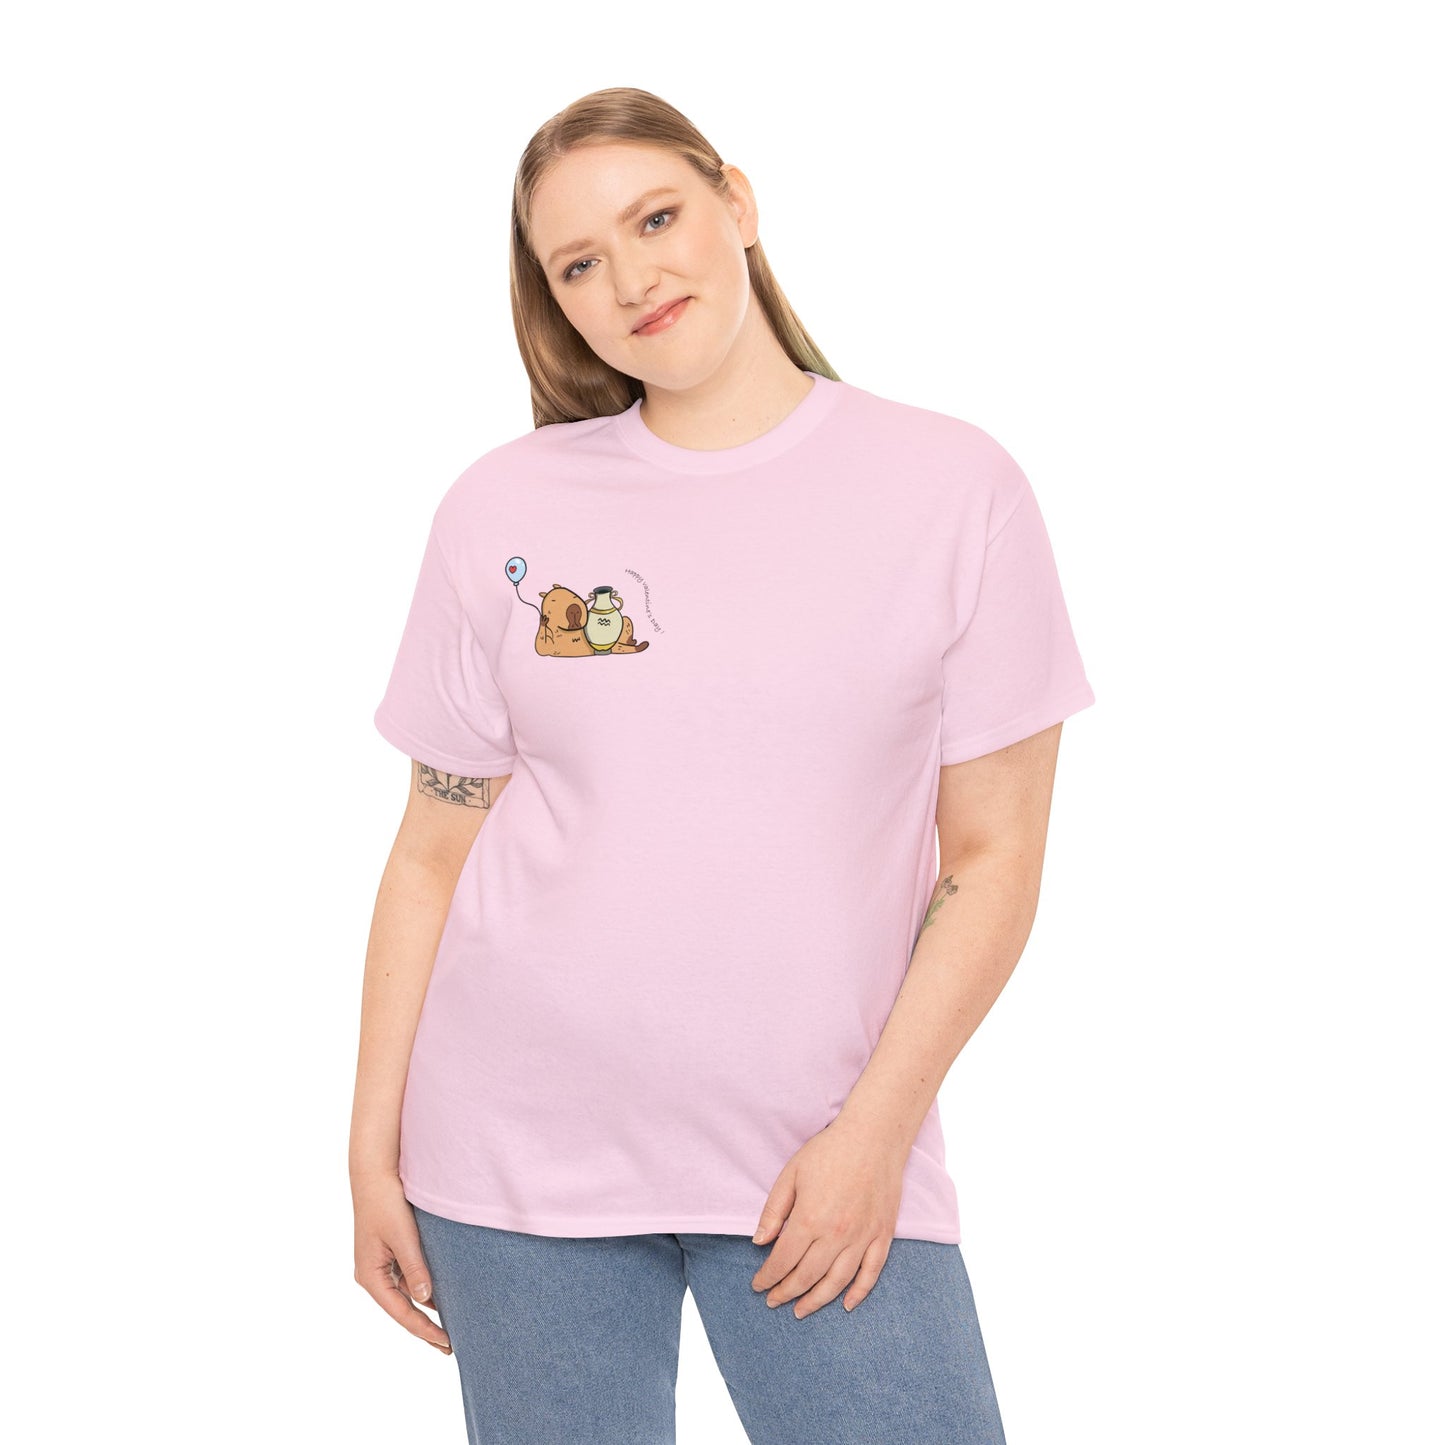 Cancer T-shirt Women